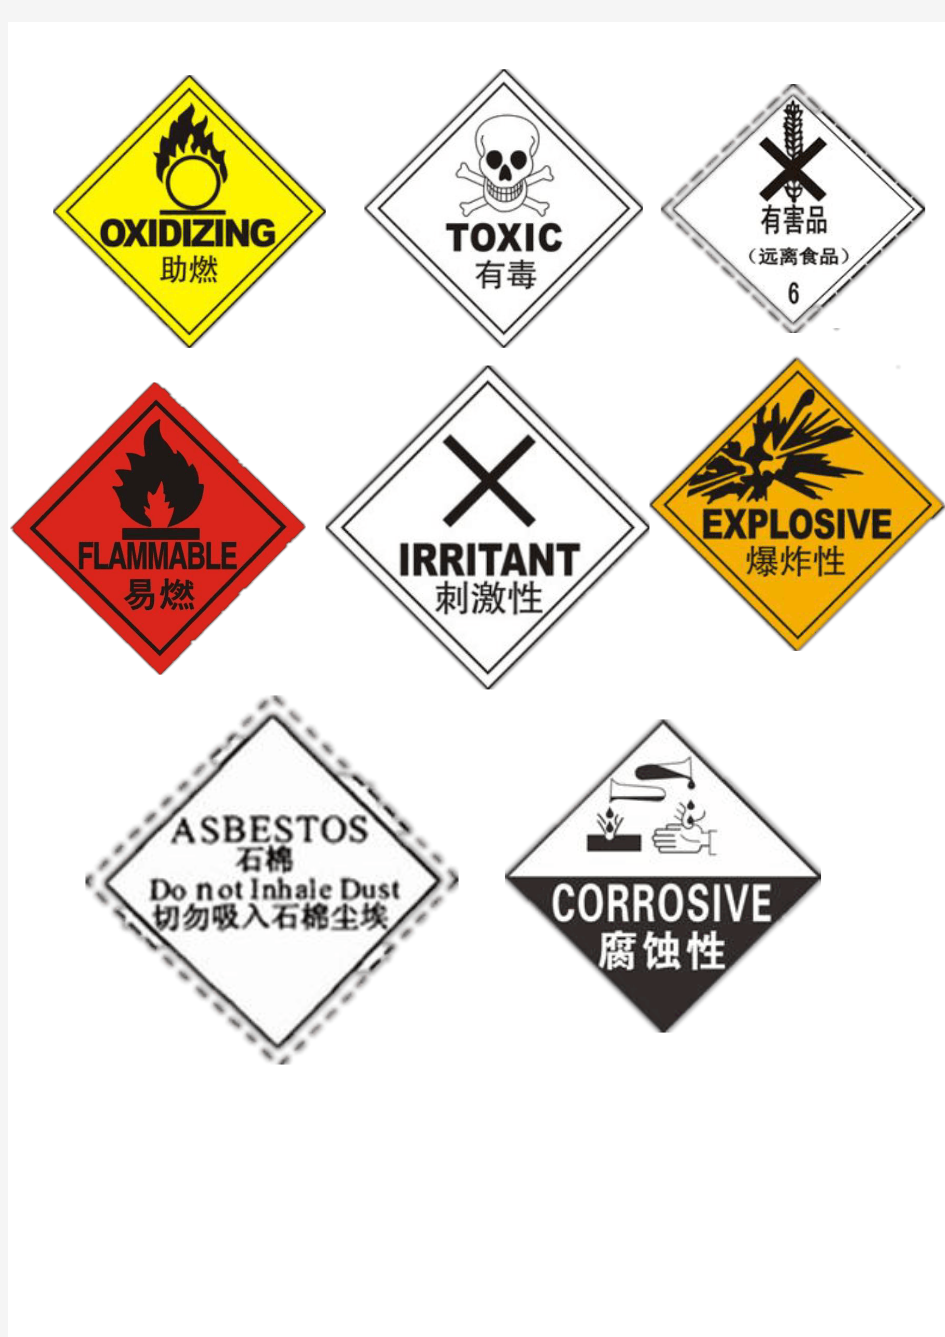 危险废物八大类别警示标示